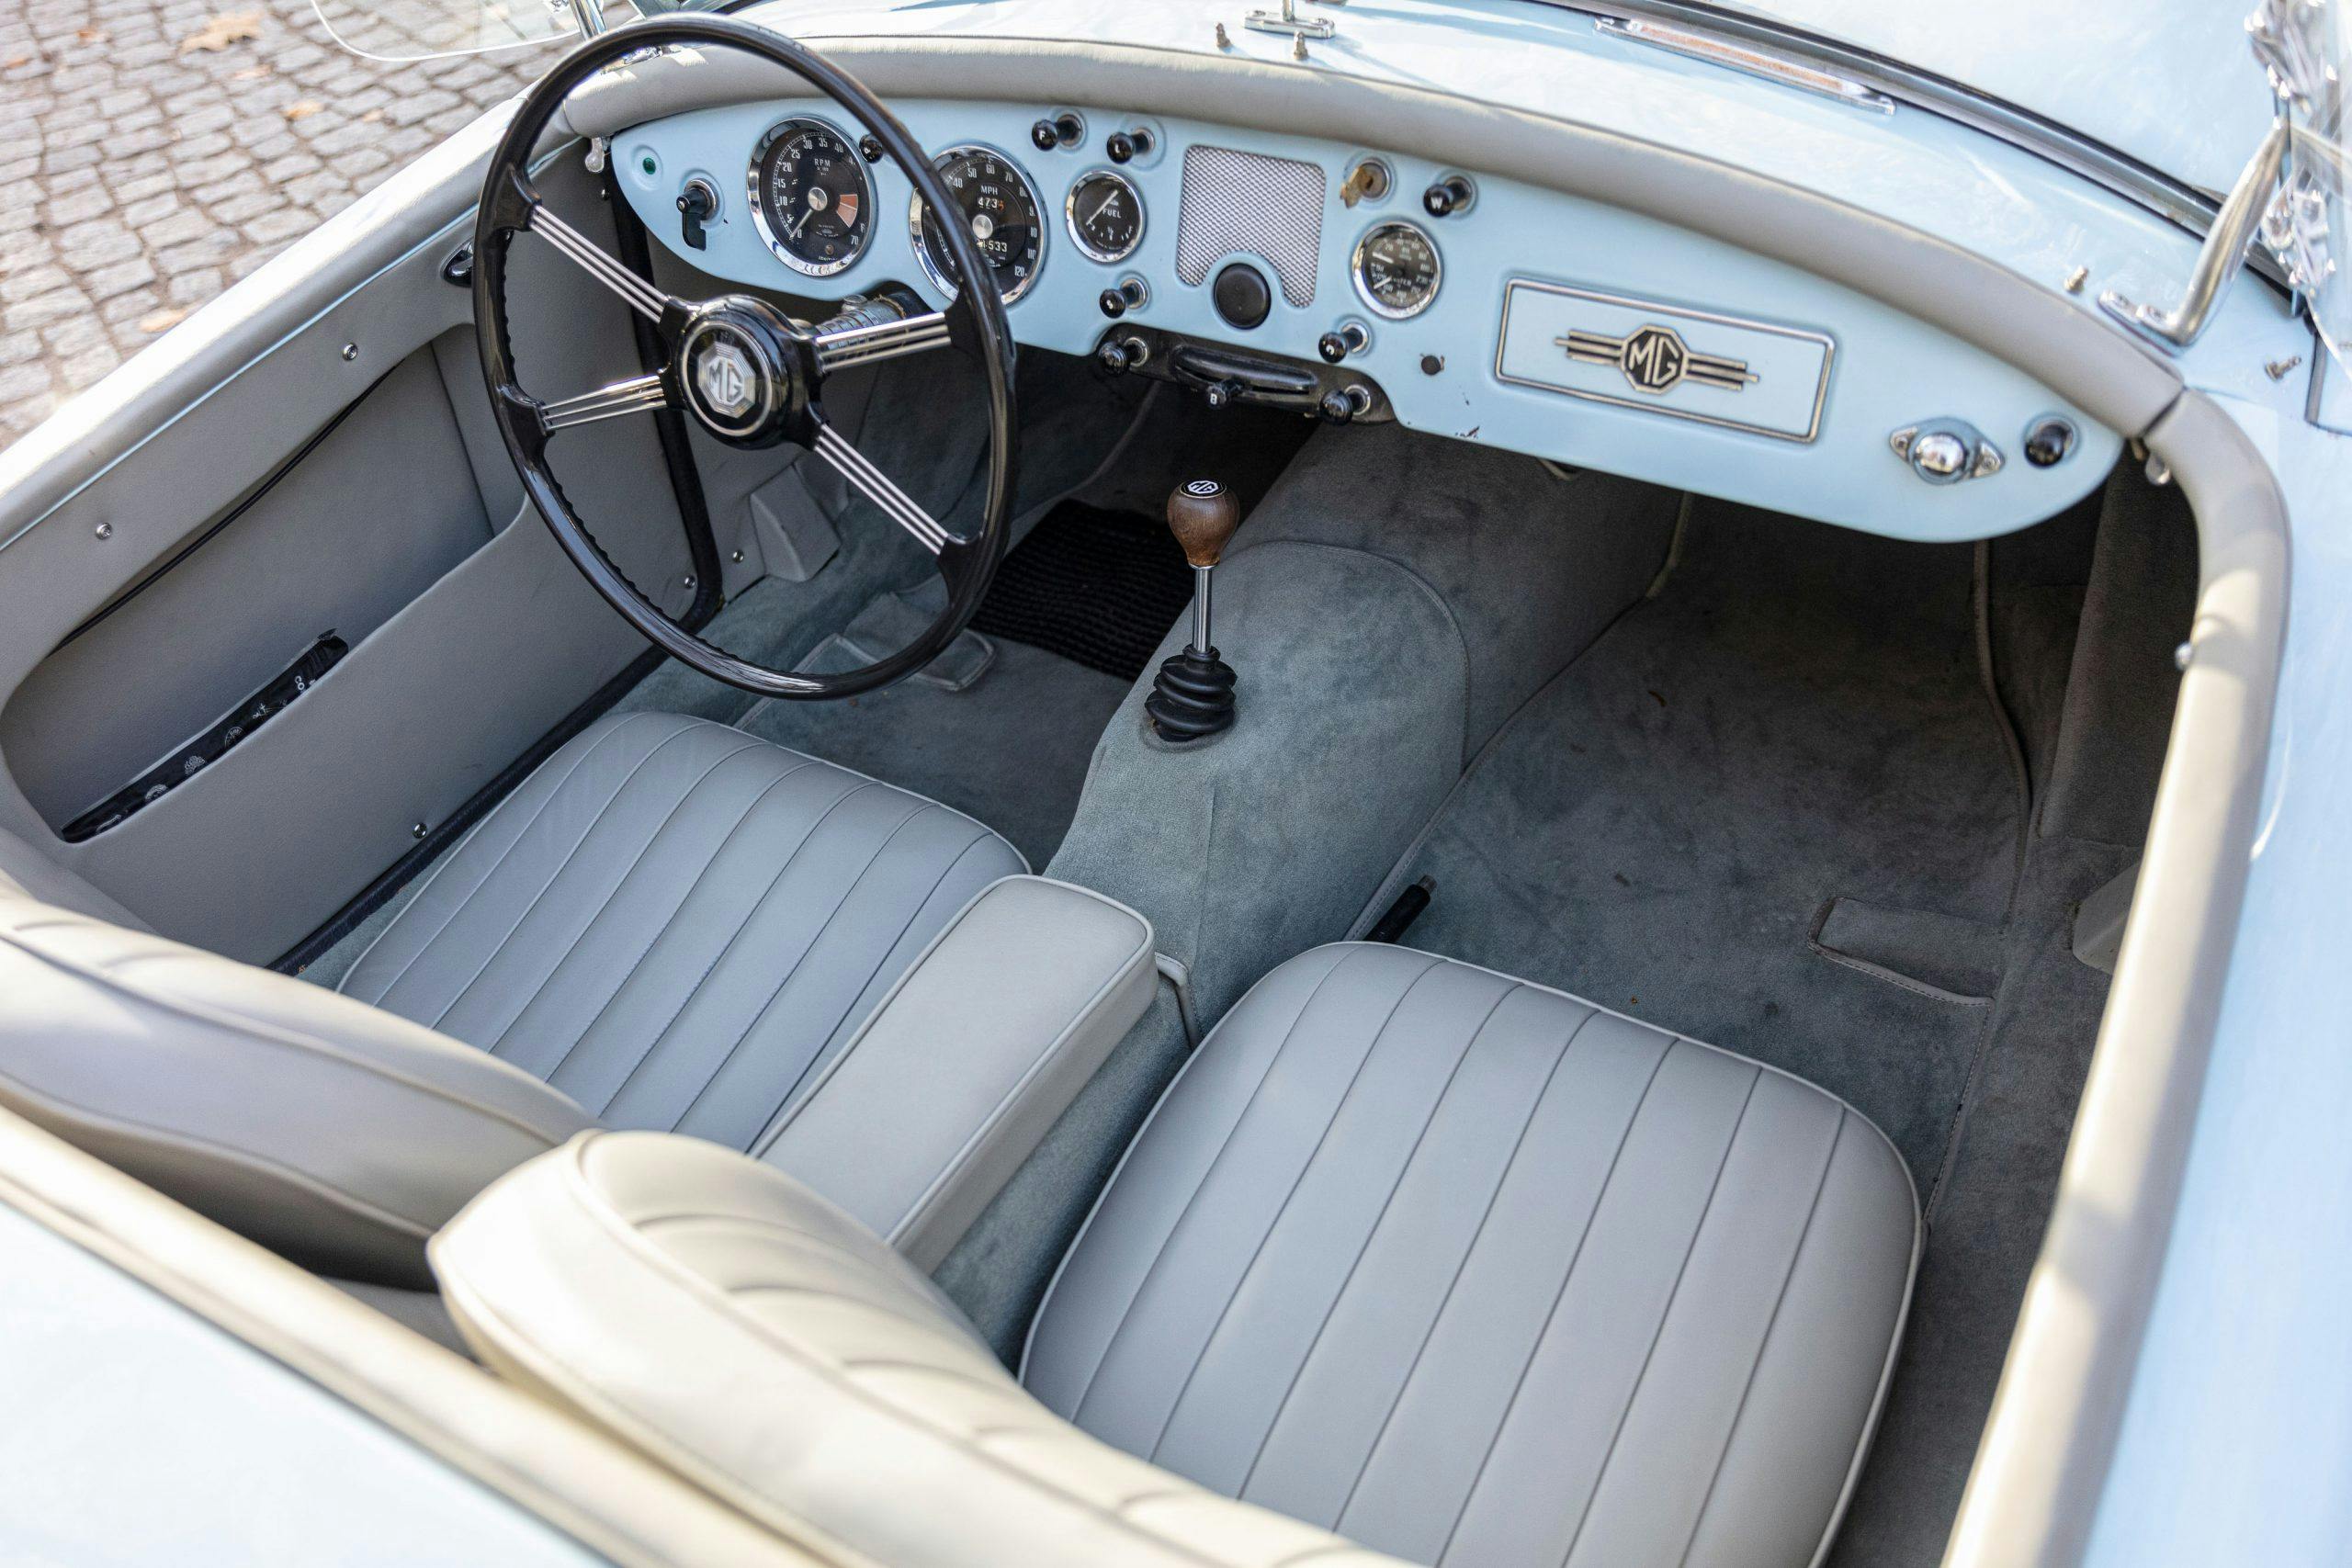 MG MGA 1500 Roadster interior